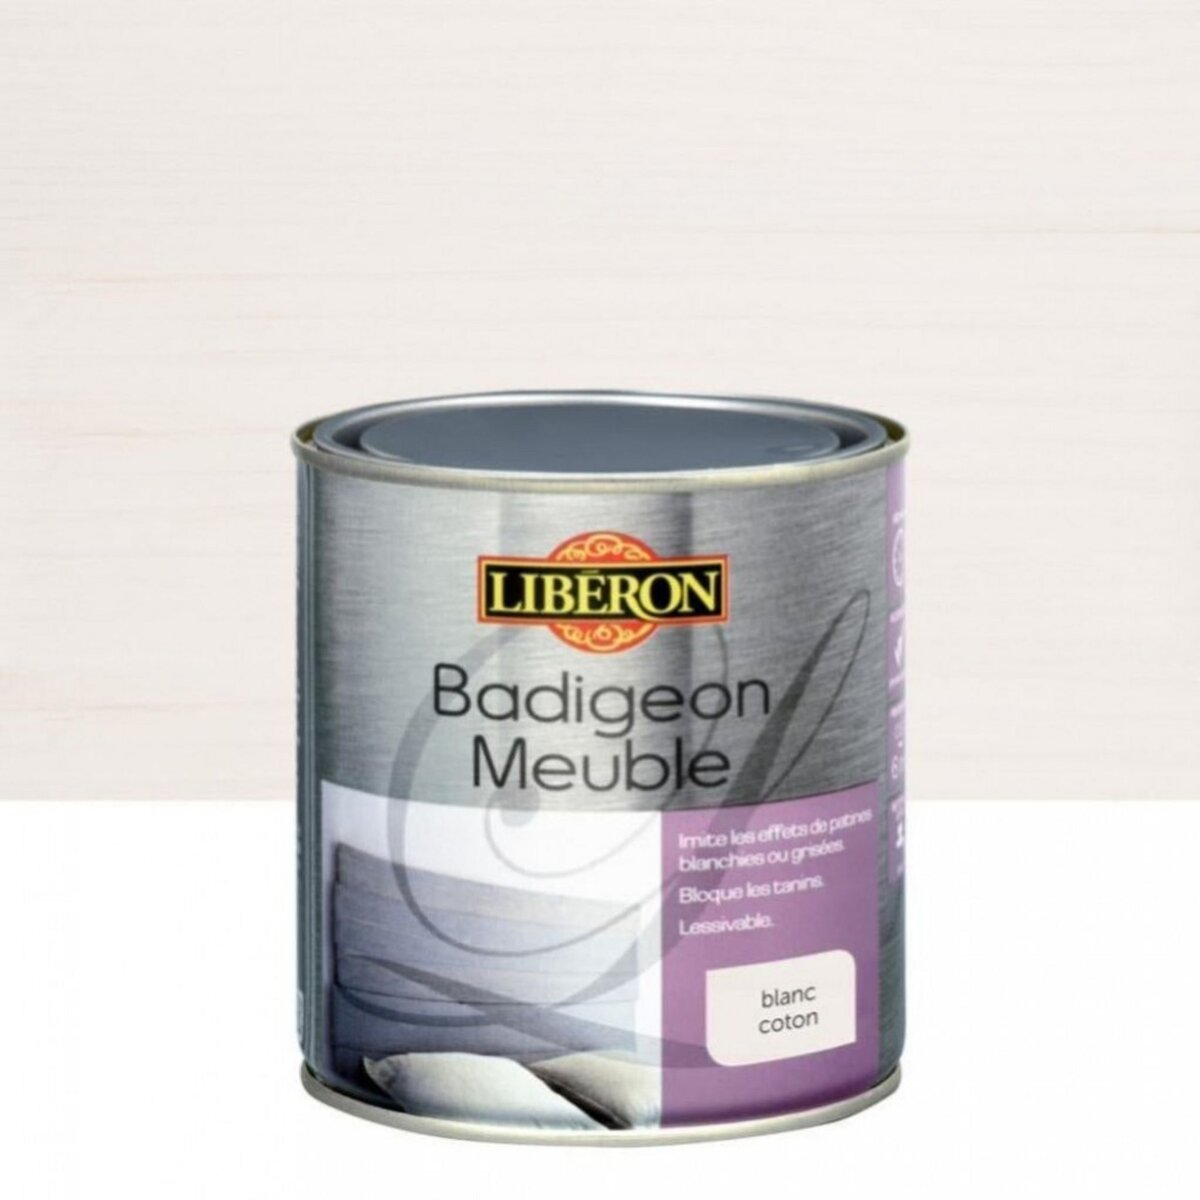 Liberon Badigeon Meuble LIBERON blanc coton mat 0.5 l pas cher 